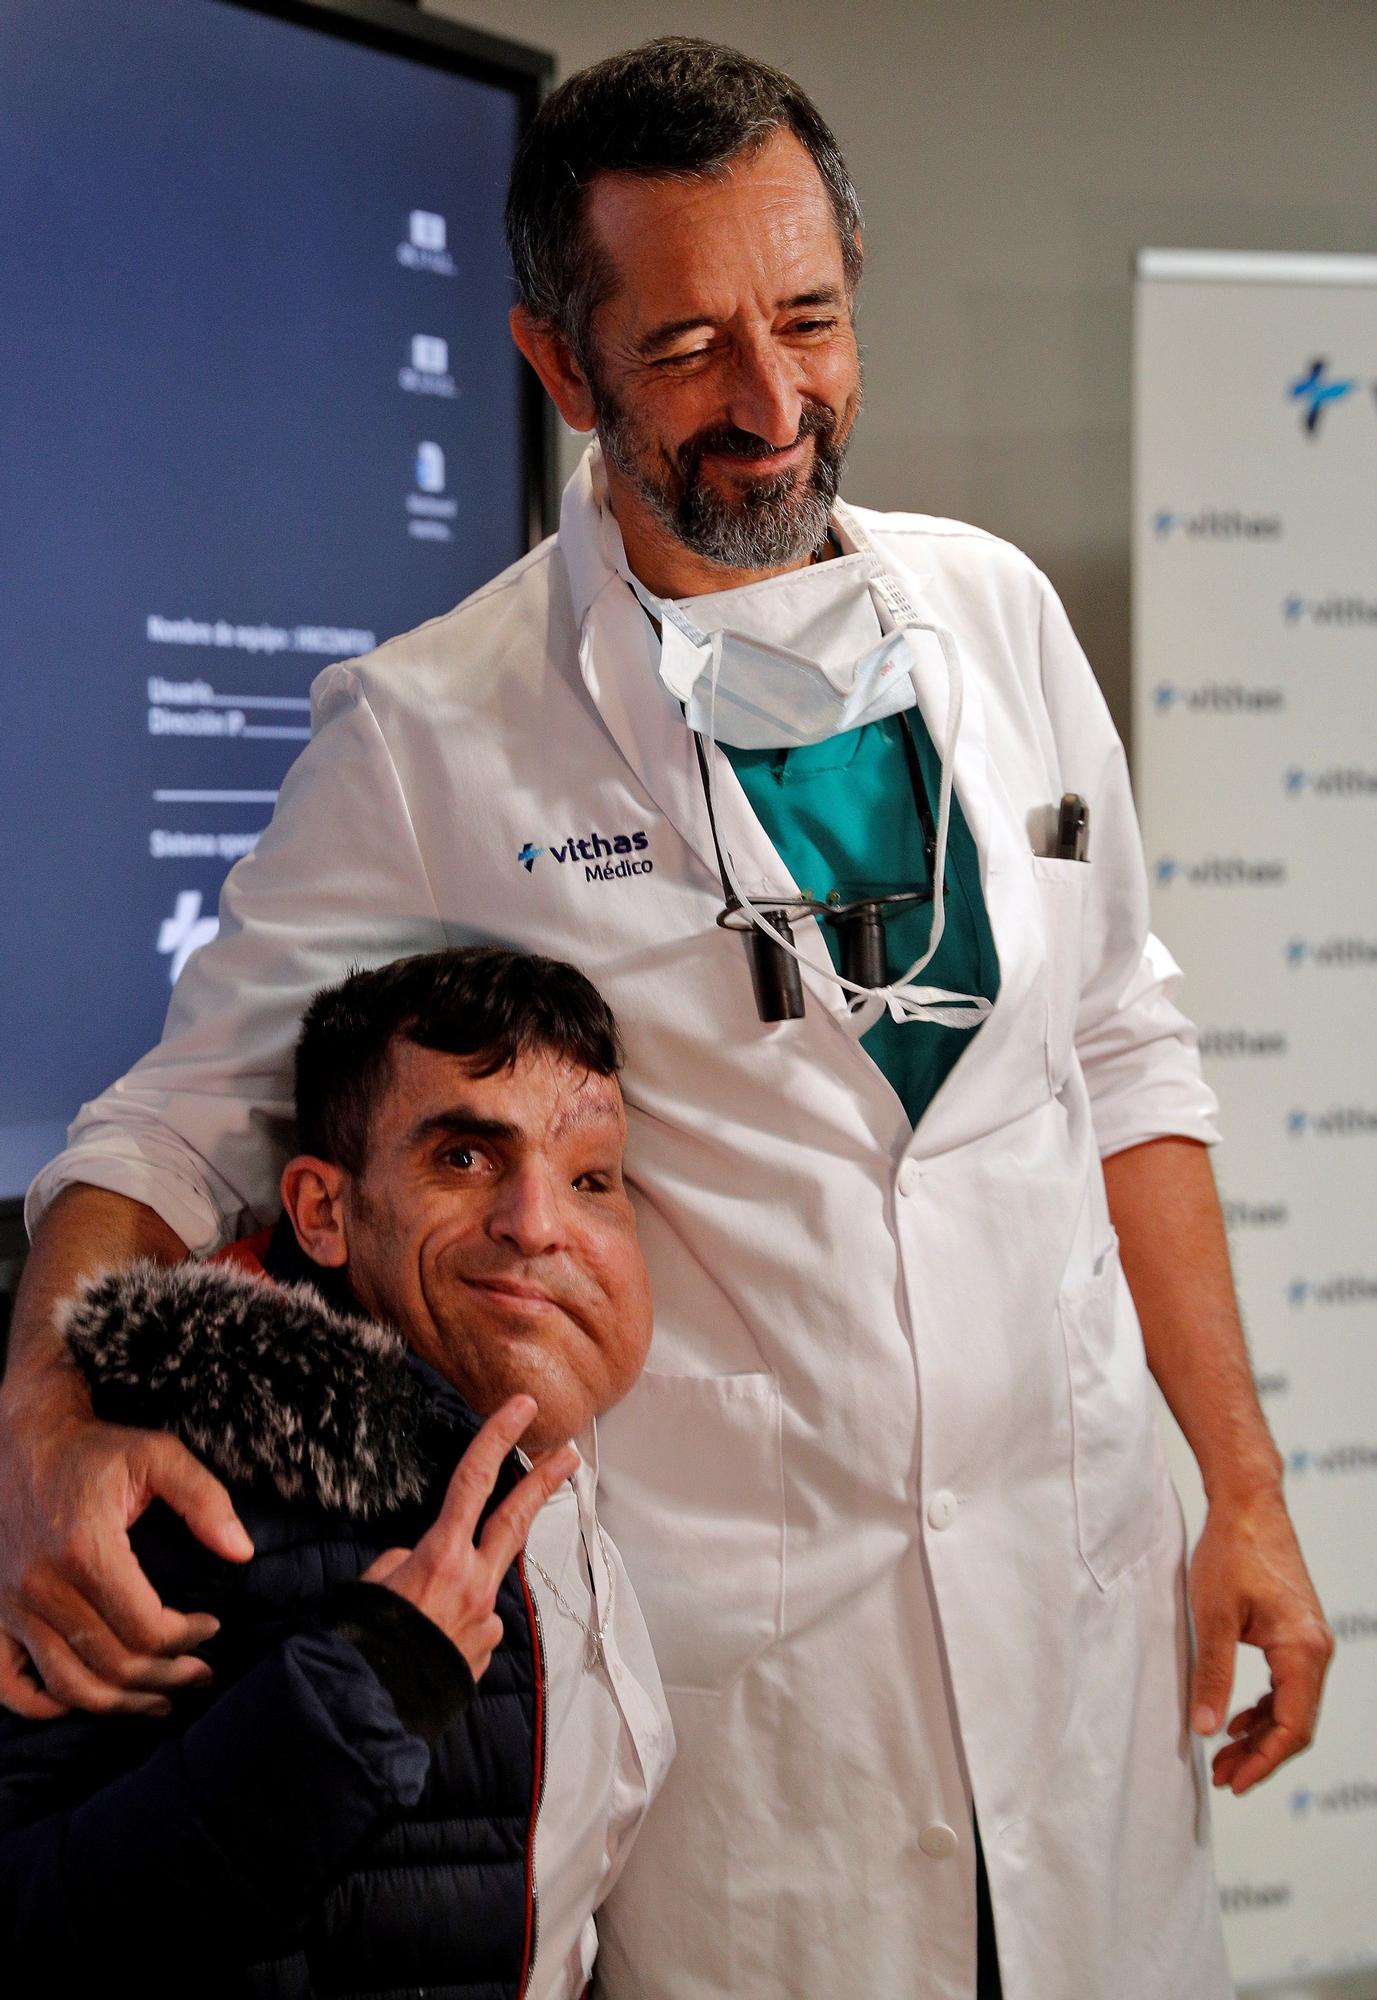 El paciente al que Cavadas ha extirpado un tumor: "Siento que soy otra persona"